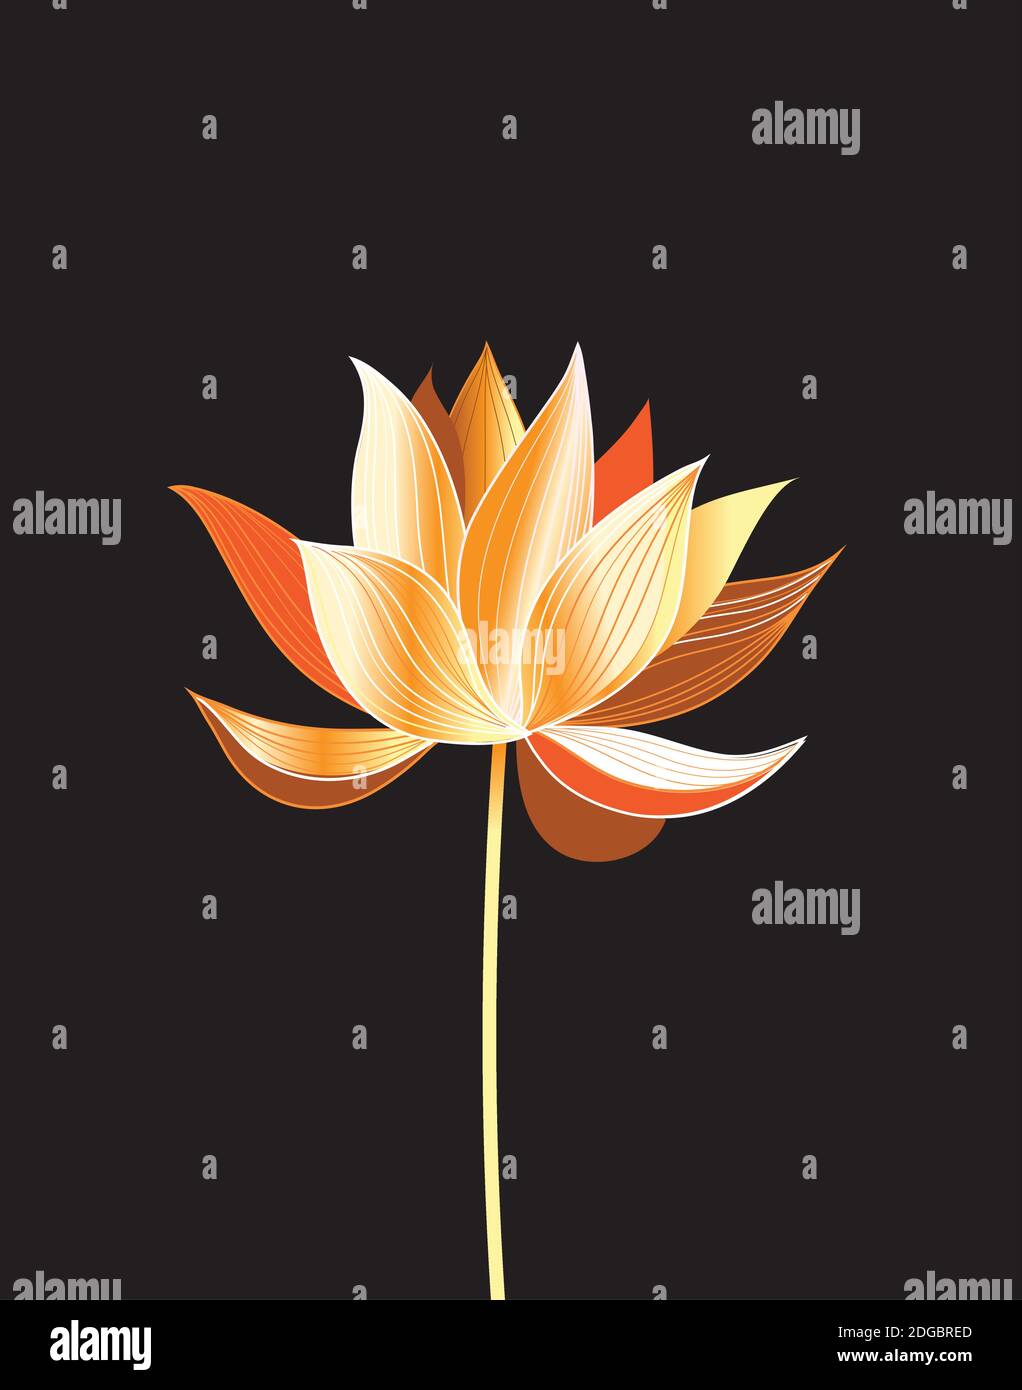 Illustrazione di un bel loto dorato su sfondo nero. Grafica Lotus flower su sfondo scuro. Illustrazione Vettoriale